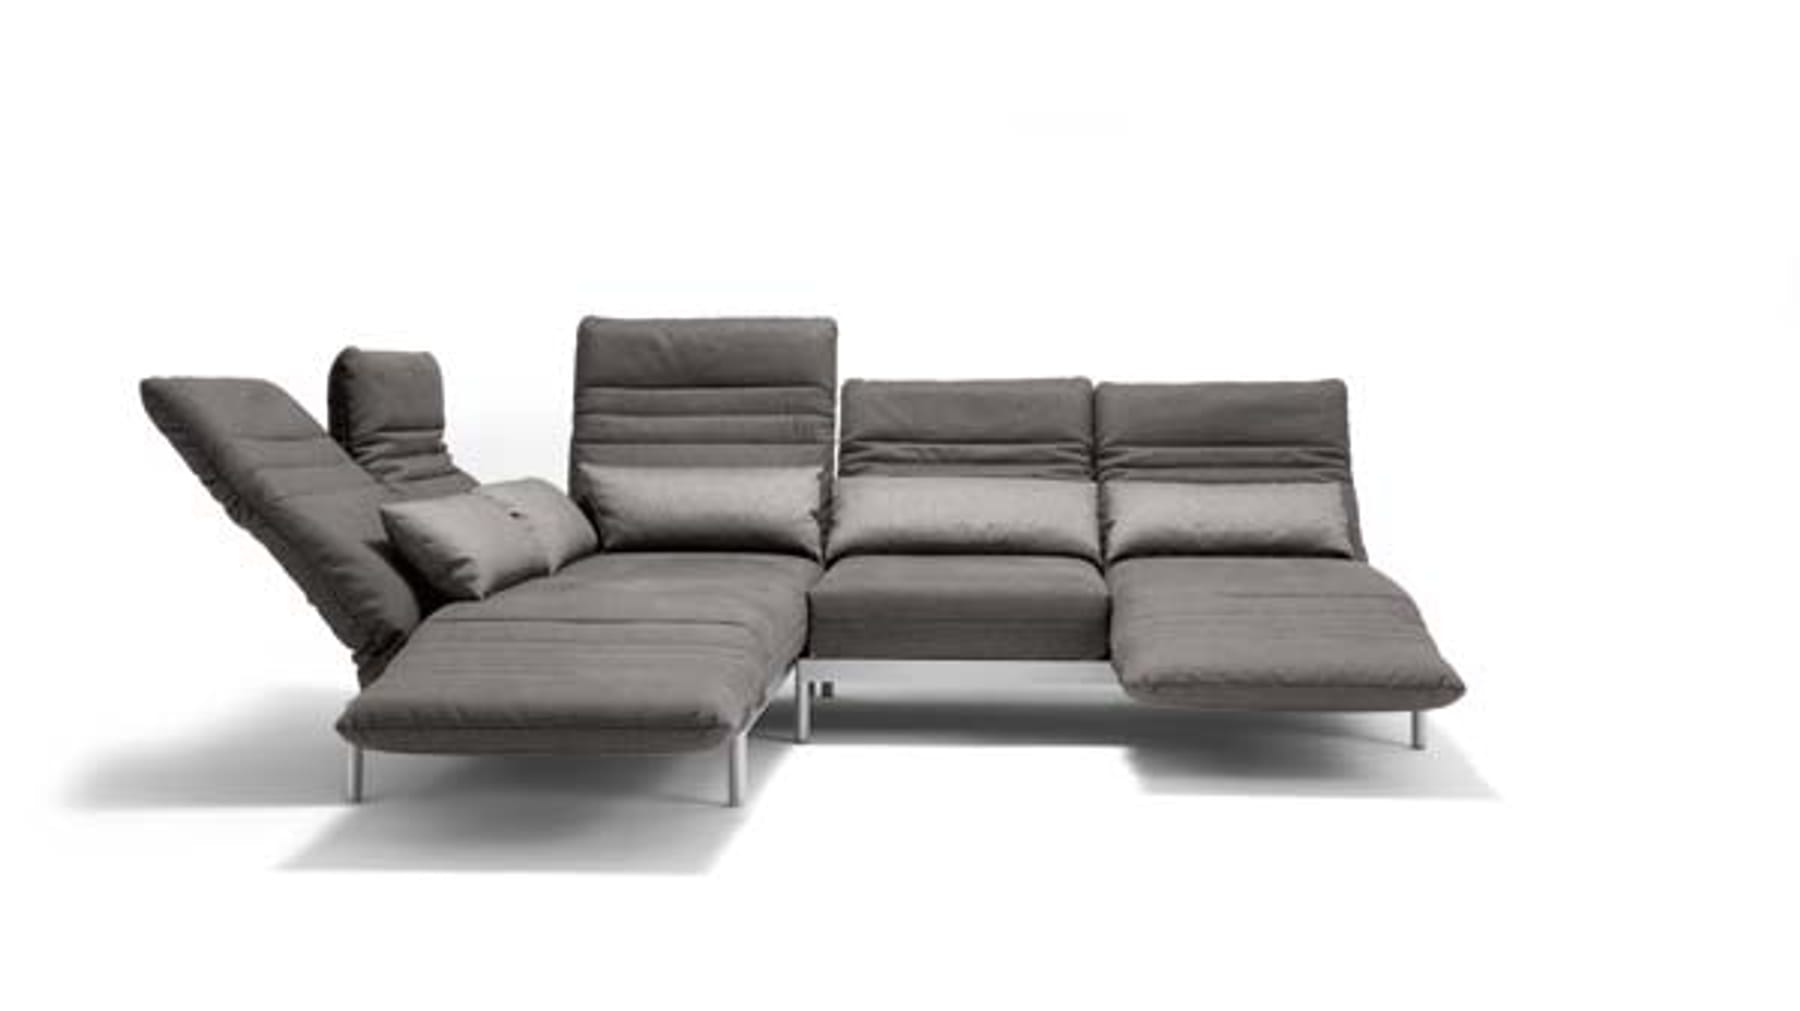 Kaufberatung: Stoff oder Leder Couch